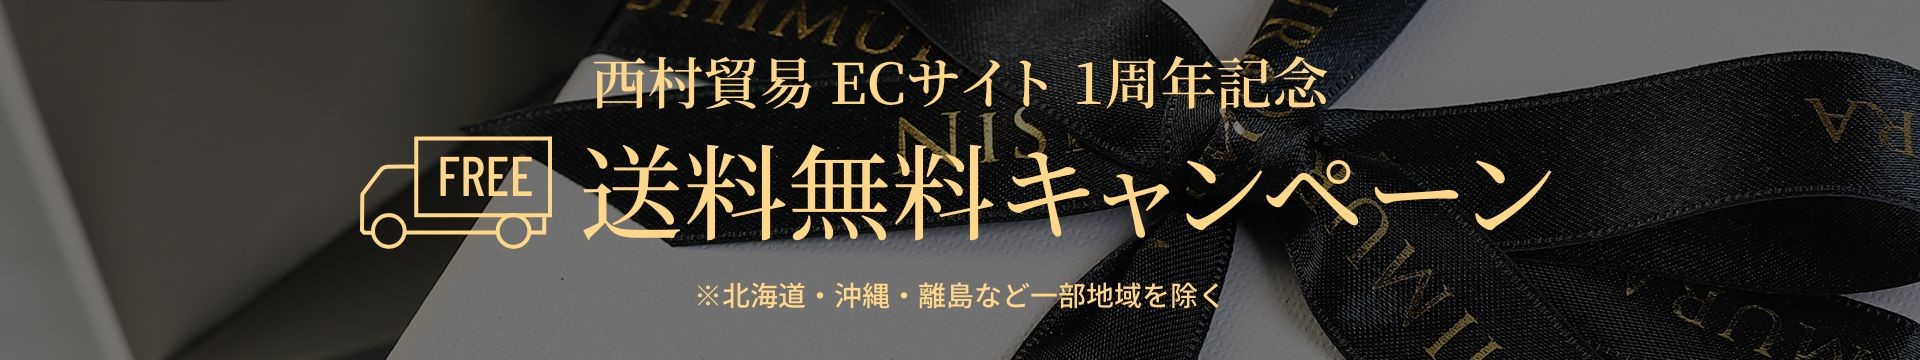 西村貿易 ECサイト 1周年記念・送料無料キャンペーン